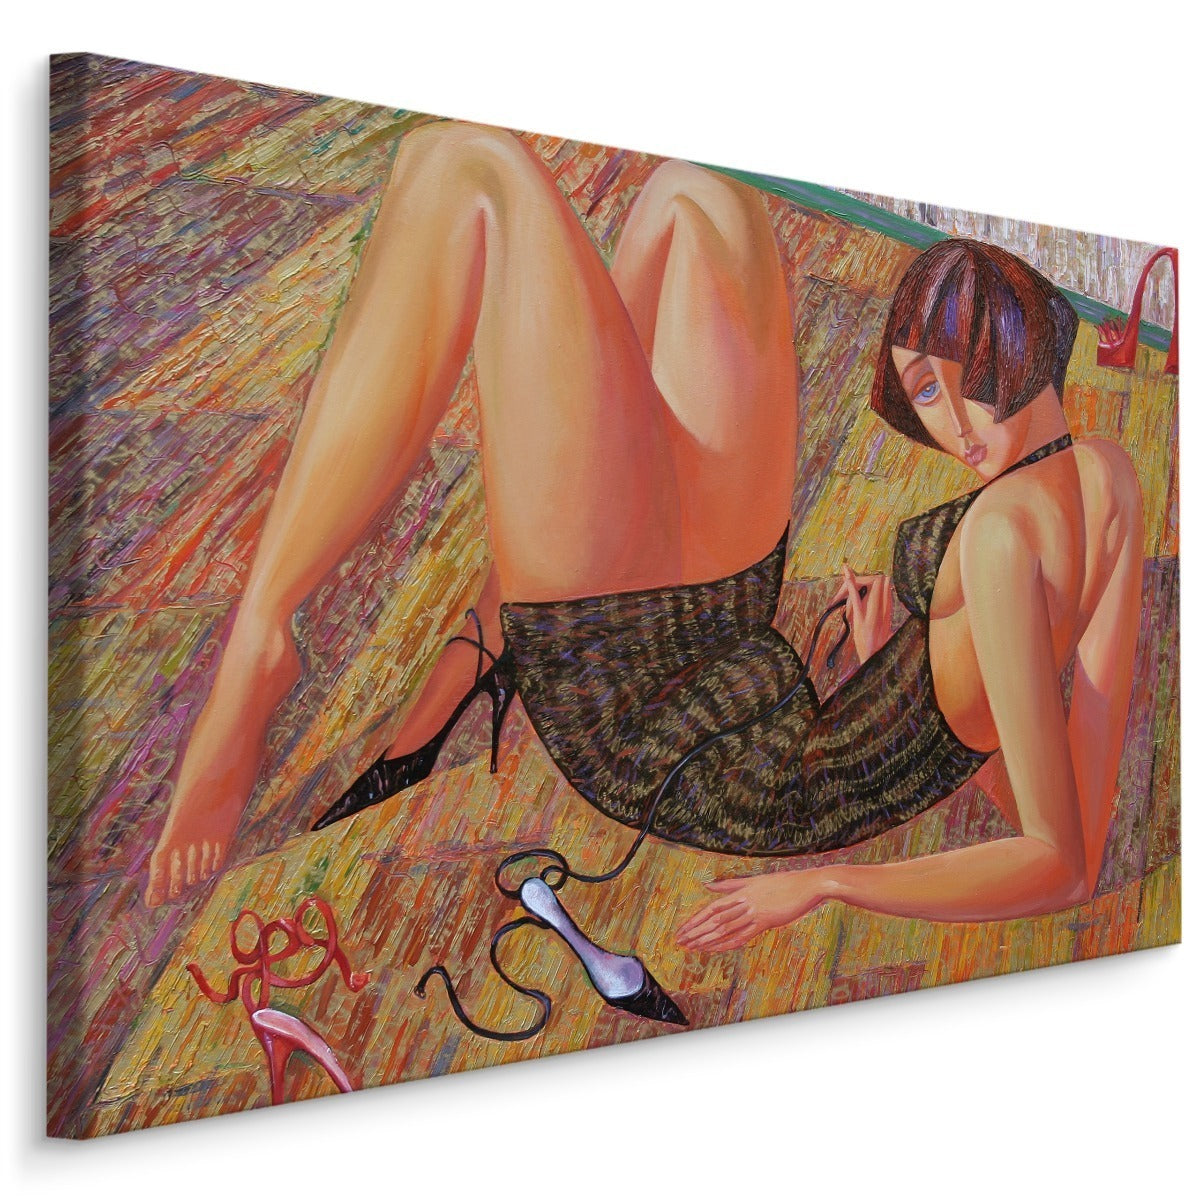 Et maleri av en kvinne i en abstrakt utgave